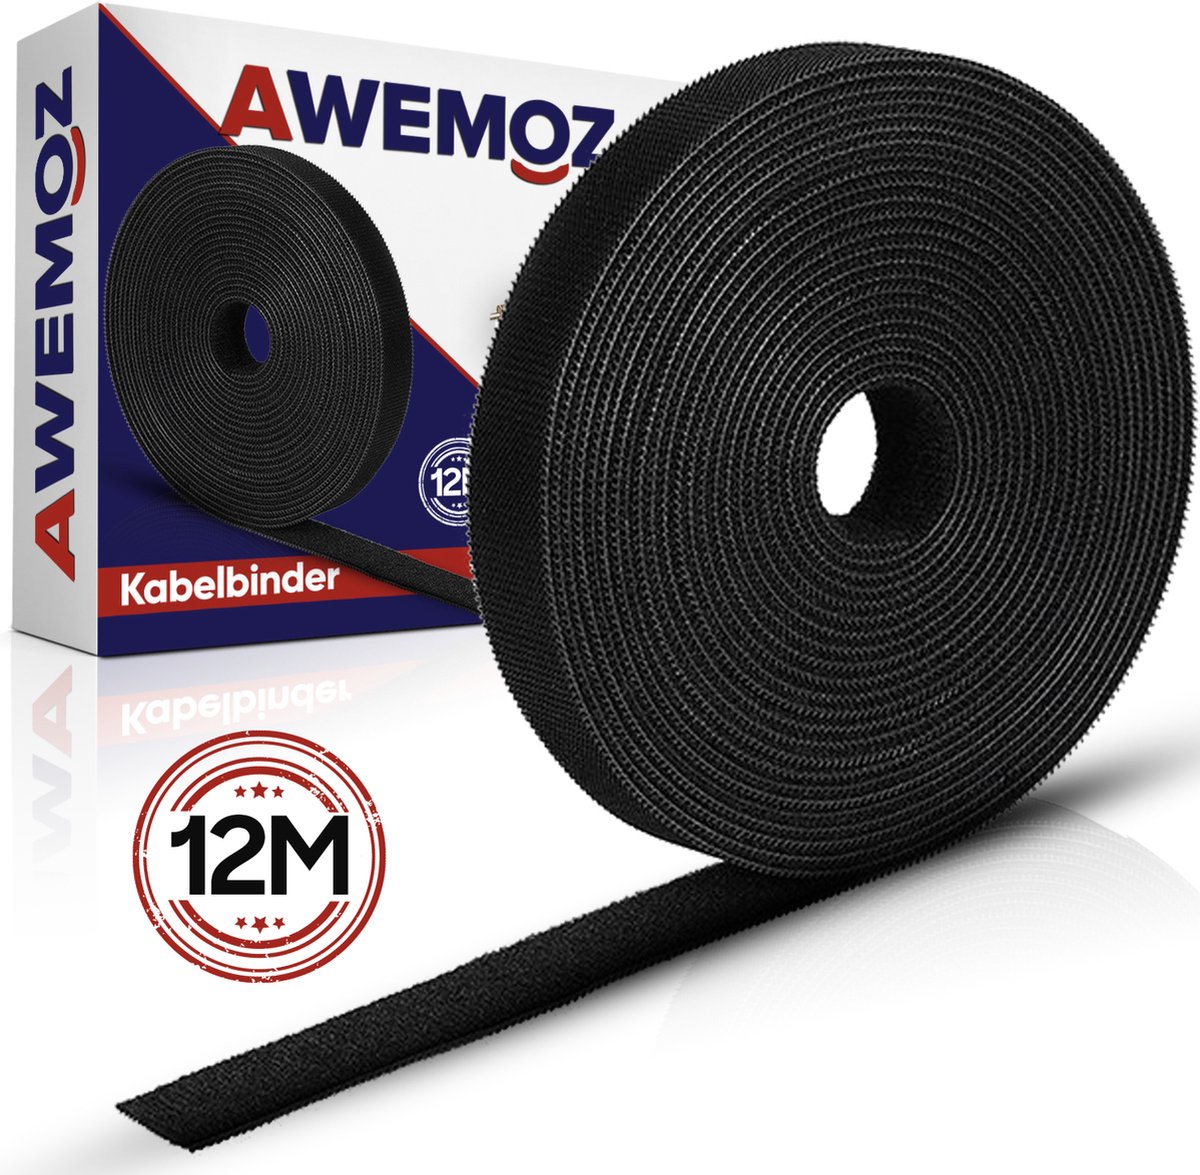 Awemoz Velcro Kabelbinders 12 Meter Lang -e Kabel Organiser - Kabel Management - Cable Organizer - Zwart